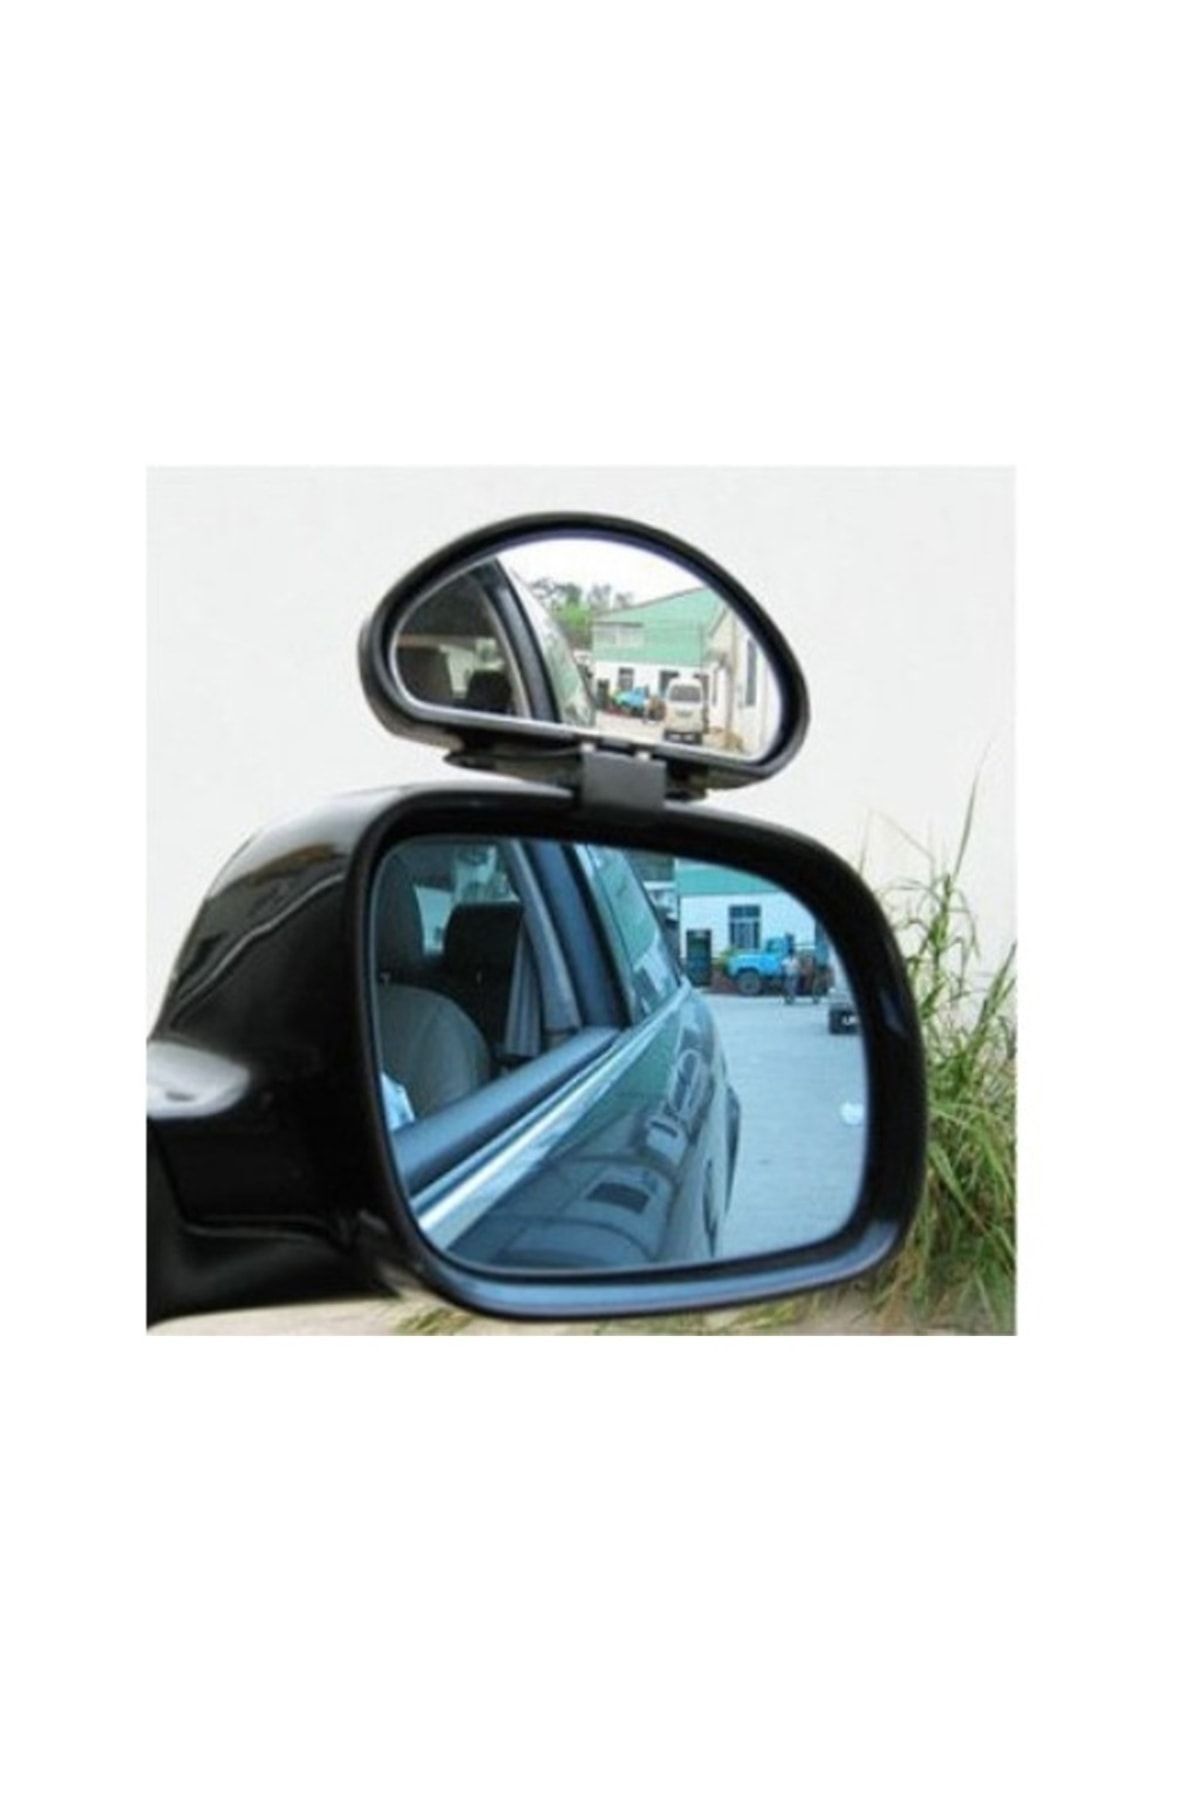 Zeki Karga Oto Araç Araba Dış Ayna Üstü Ek Kör Nokta Aynası 1 Adet Ayna